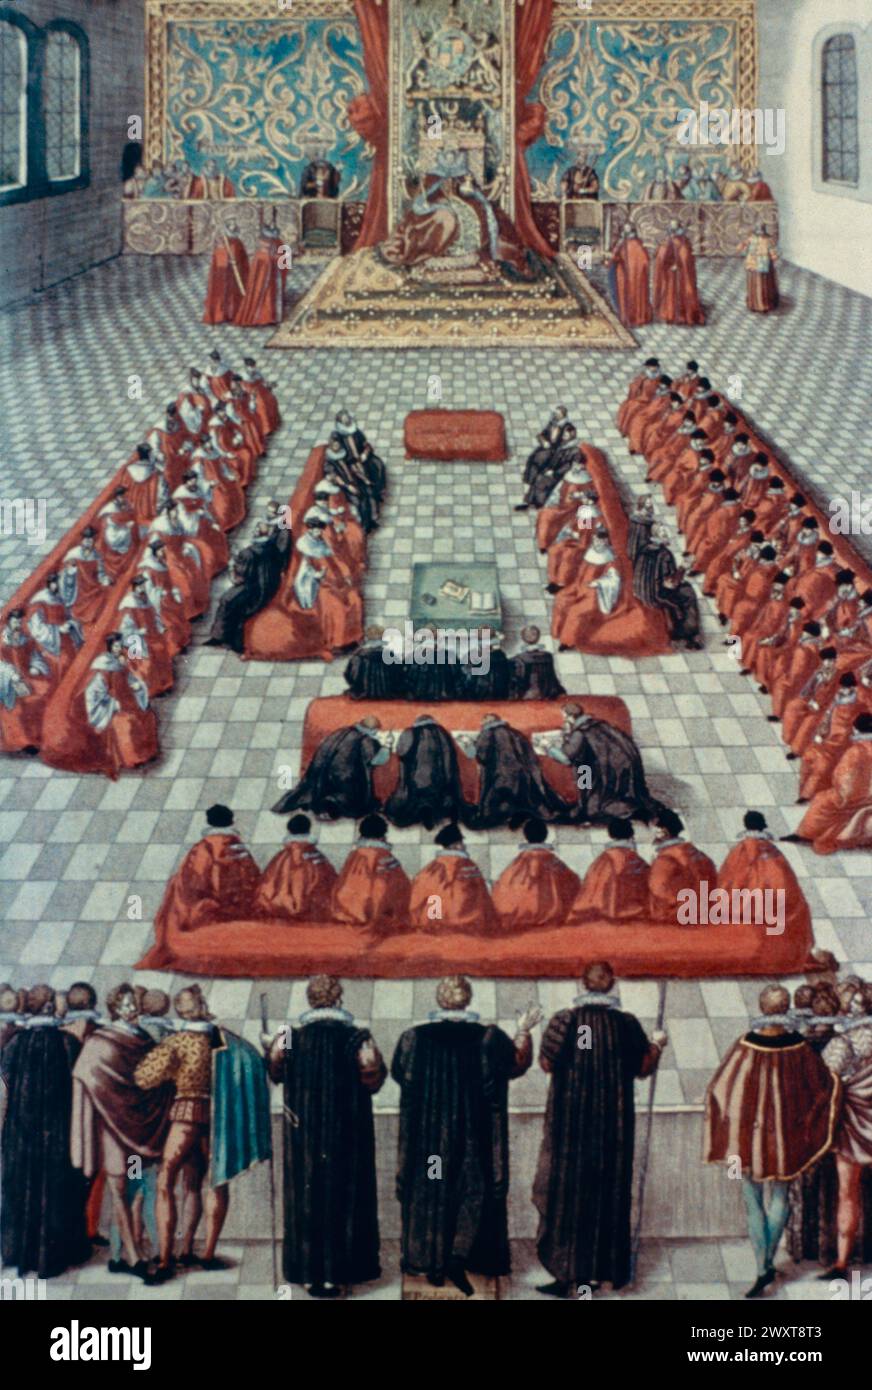 Reine Elizabeth I d'Angleterre devant le Parlement, peinture du XVIe siècle Banque D'Images